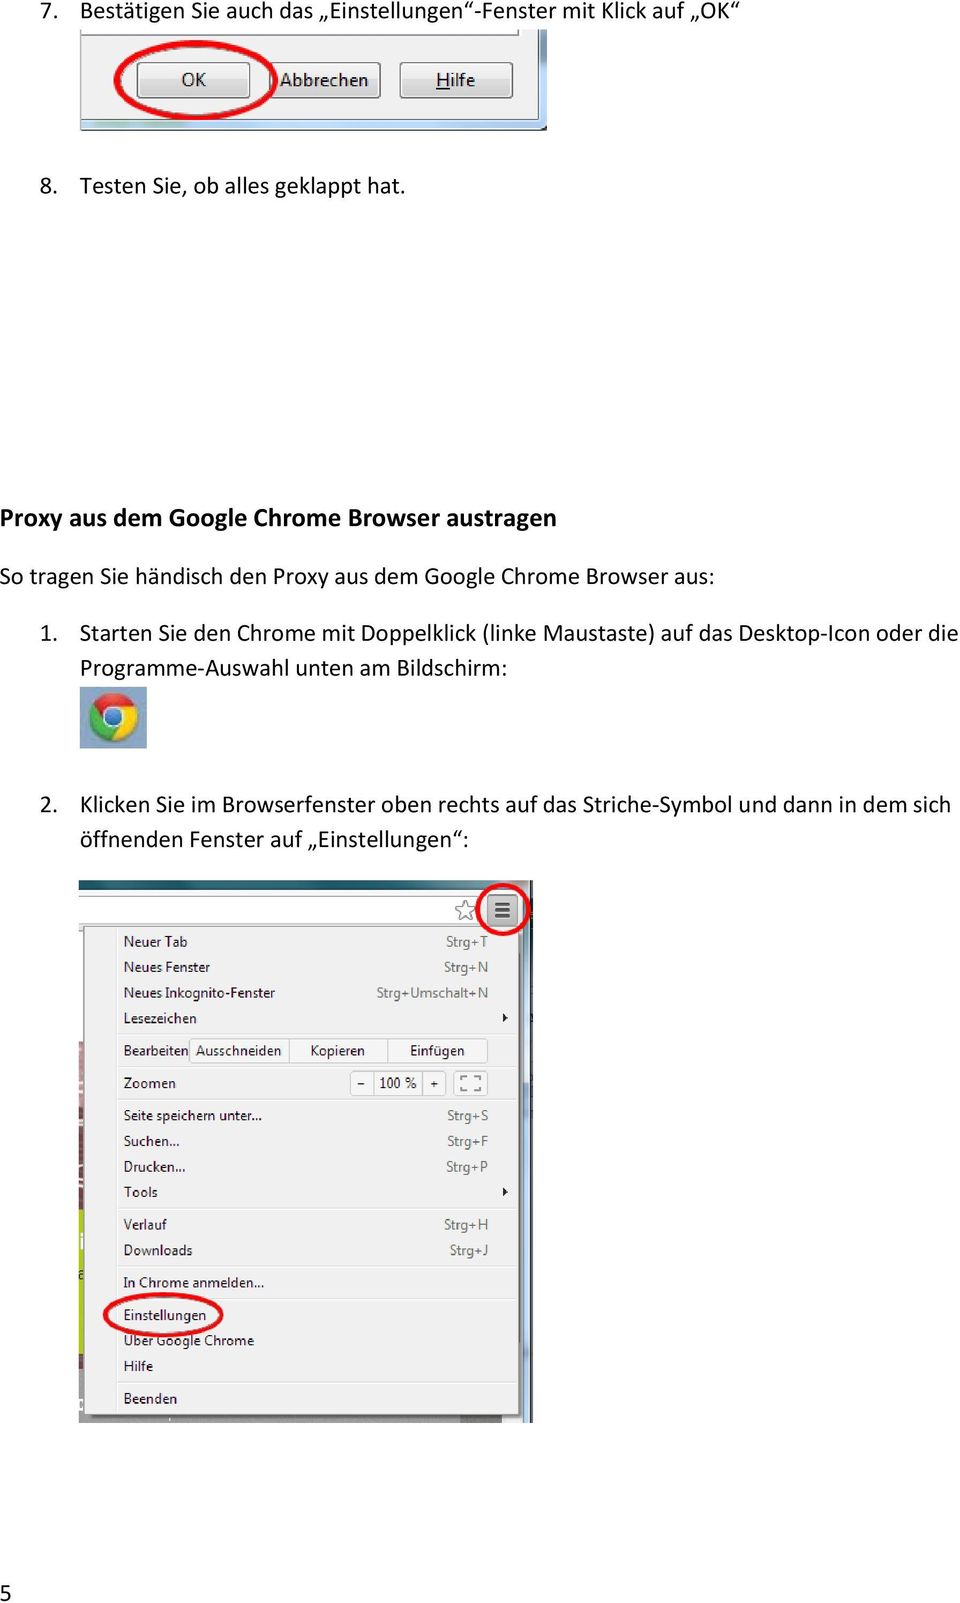 Starten Sie den Chrome mit Doppelklick (linke Maustaste) auf das Desktop Icon oder die Programme Auswahl unten am